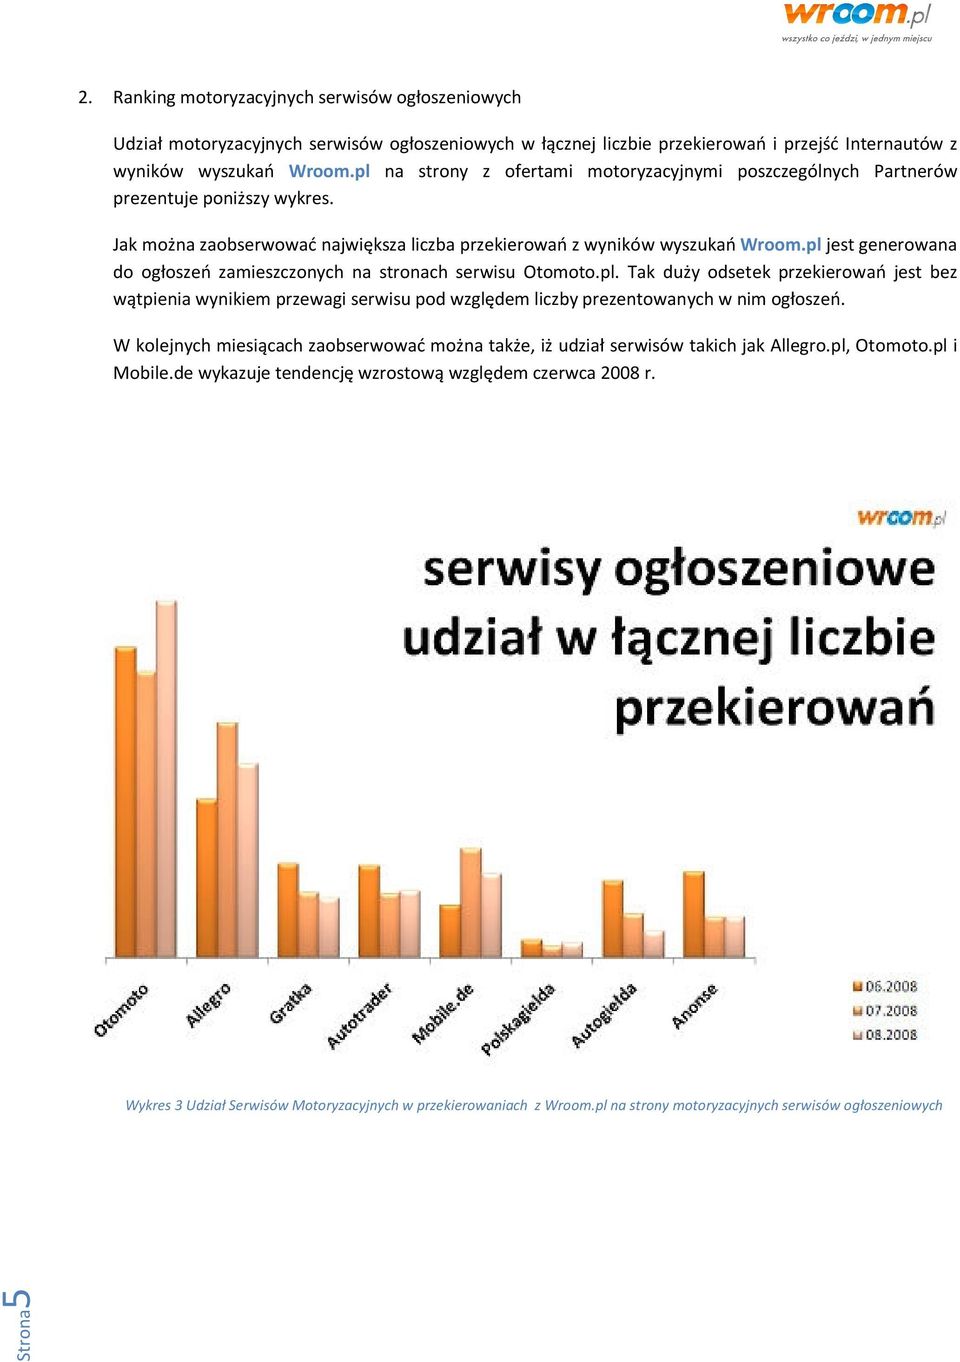 pl jest generowana do ogłoszeń zamieszczonych na stronach serwisu Otomoto.pl. Tak duży odsetek przekierowań jest bez wątpienia wynikiem przewagi serwisu pod względem liczby prezentowanych w nim ogłoszeń.